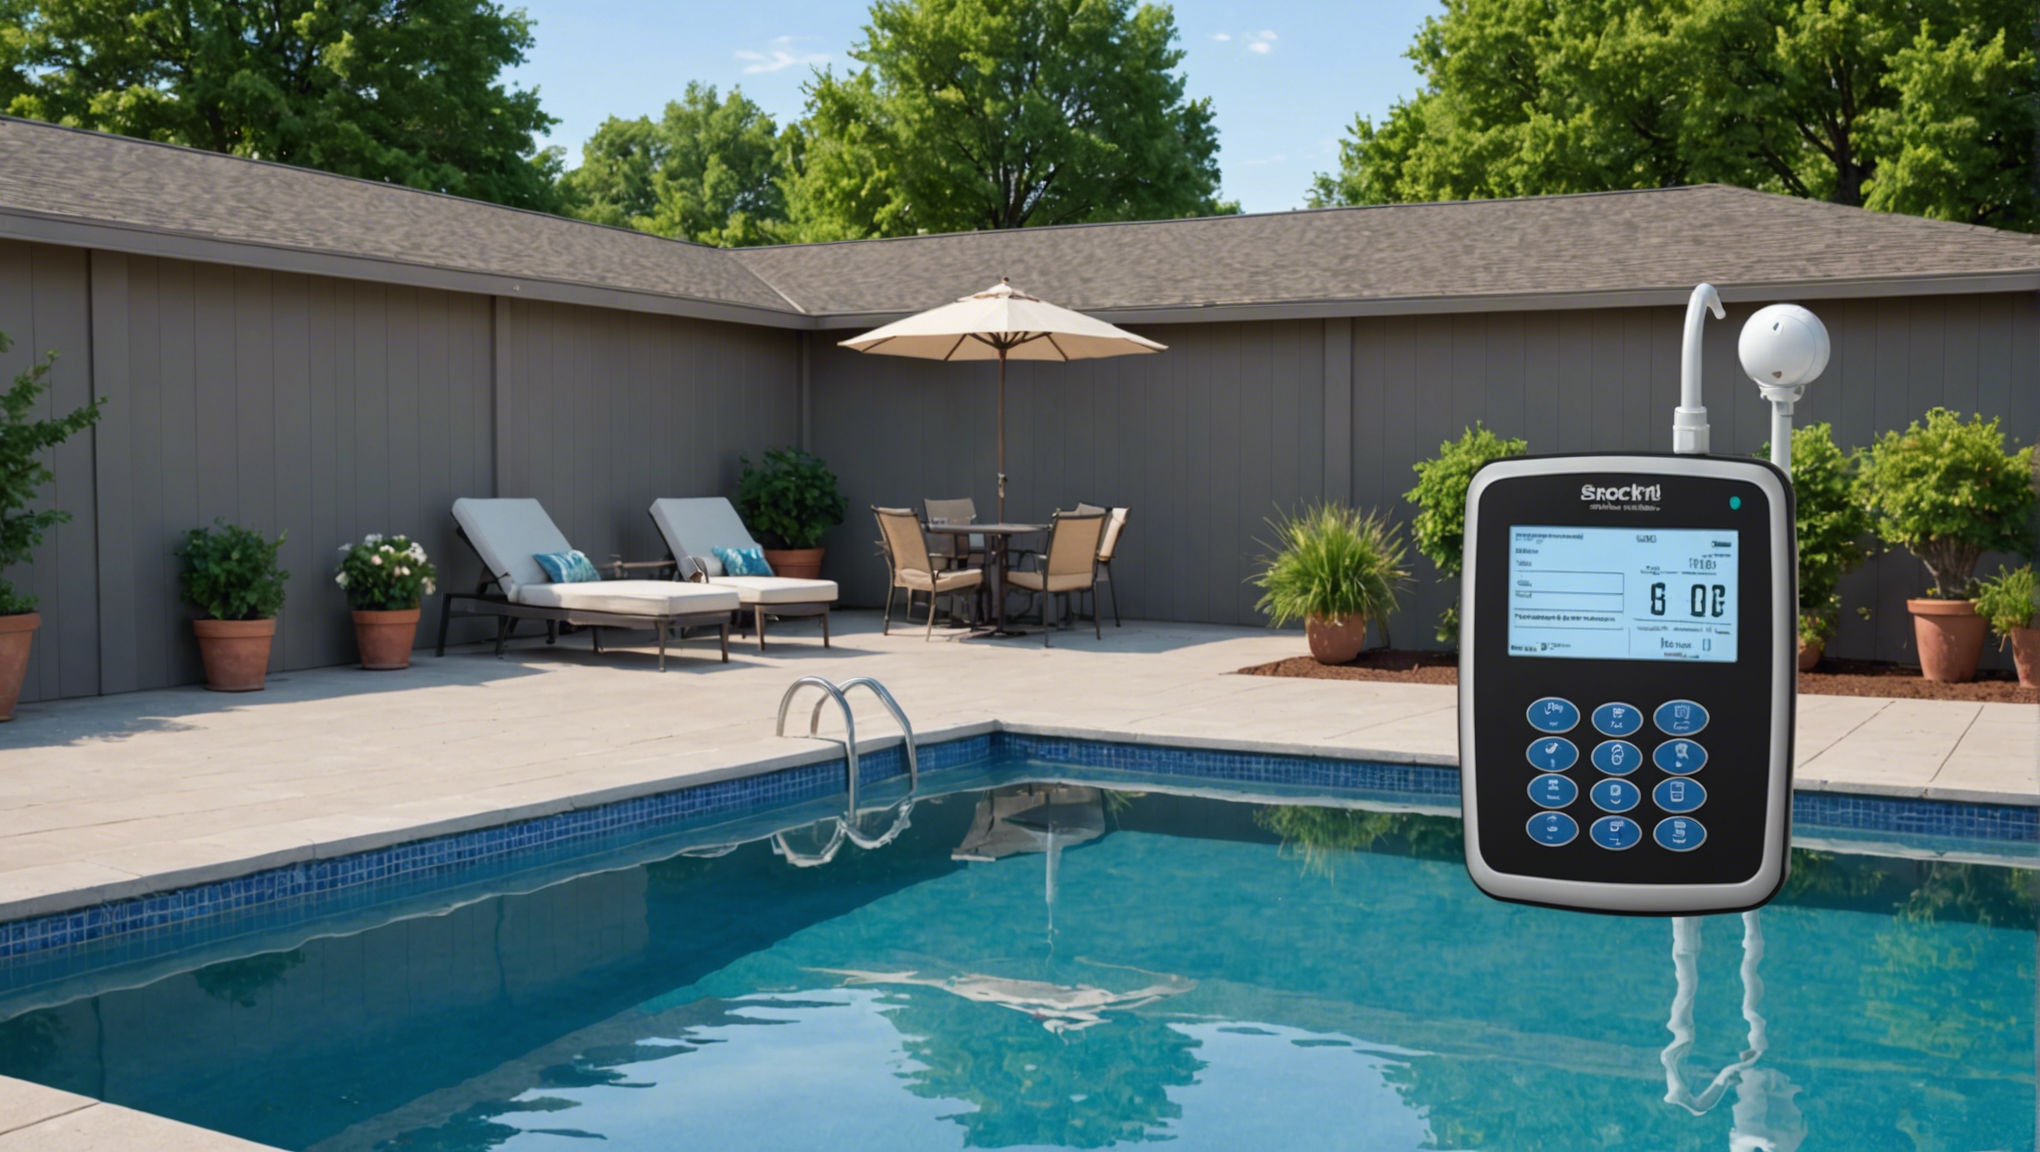 découvrez la réglementation applicable aux alarmes de piscine en kit pour assurer la sécurité de votre piscine selon la législation en vigueur.